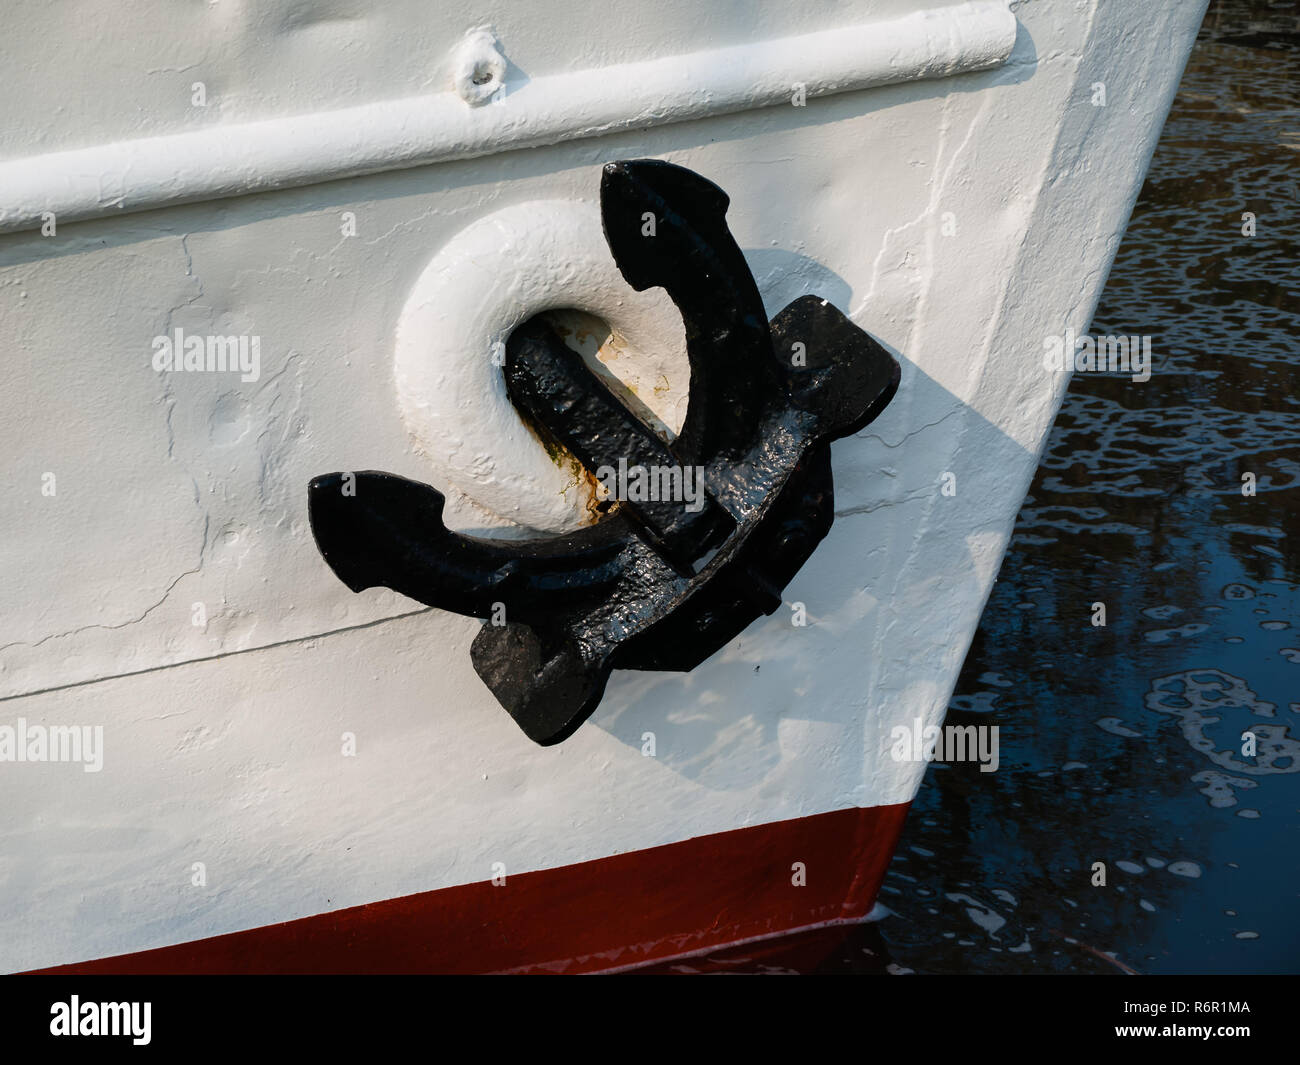 Black anchor on a white ship. Stock Photo